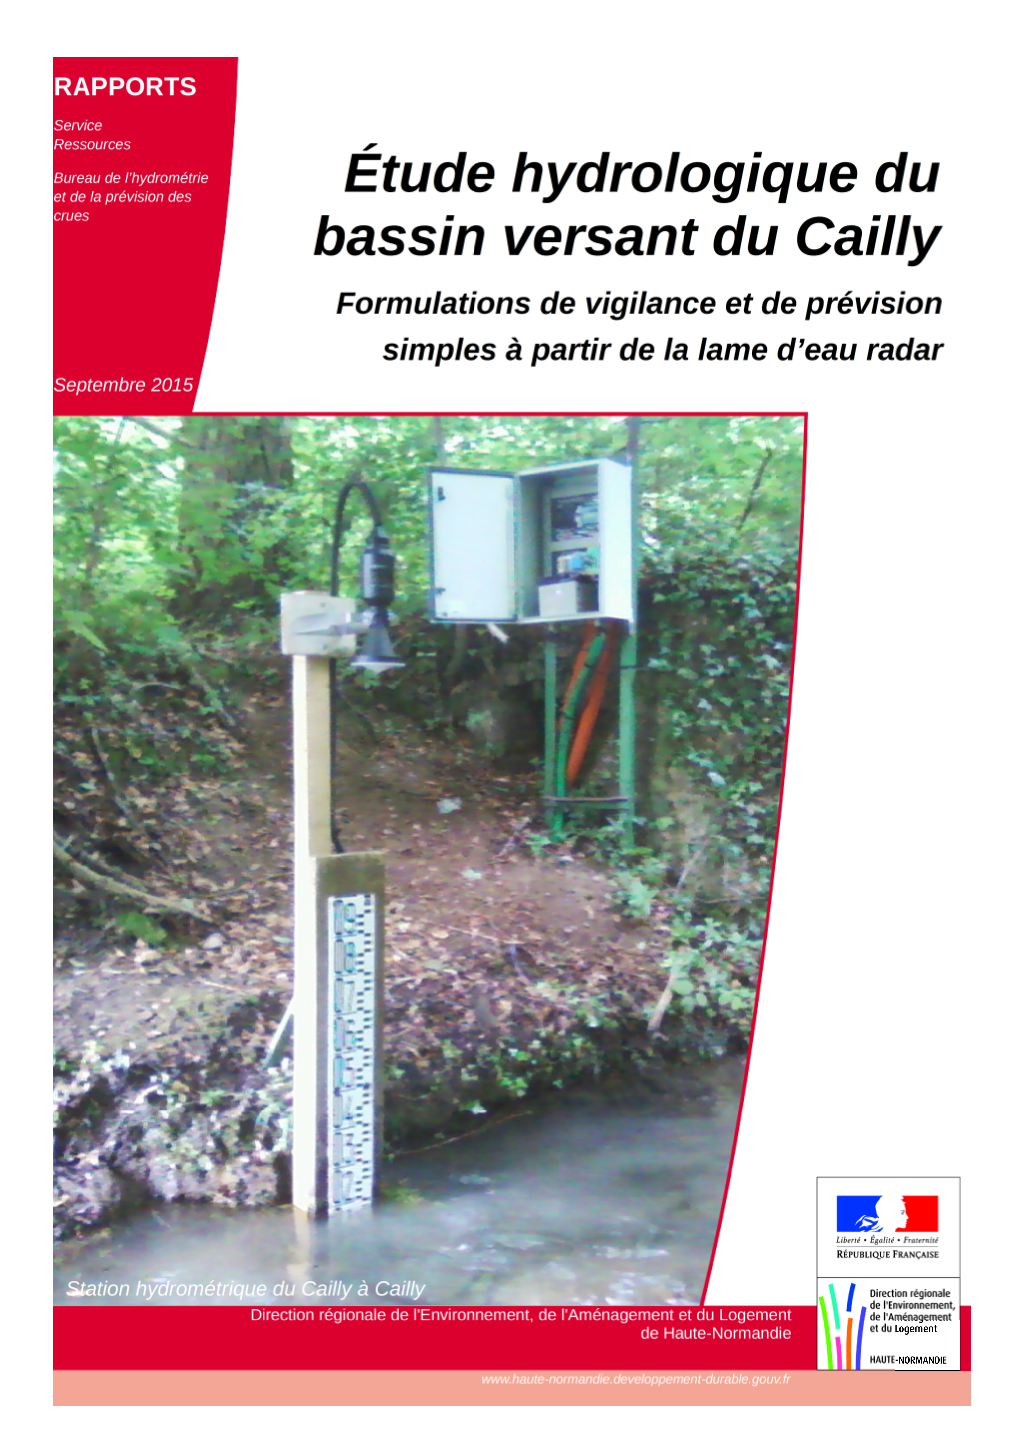 Le Cailly Est Un Affluent Rive Droite De La Seine Qui Conflue À Rouen